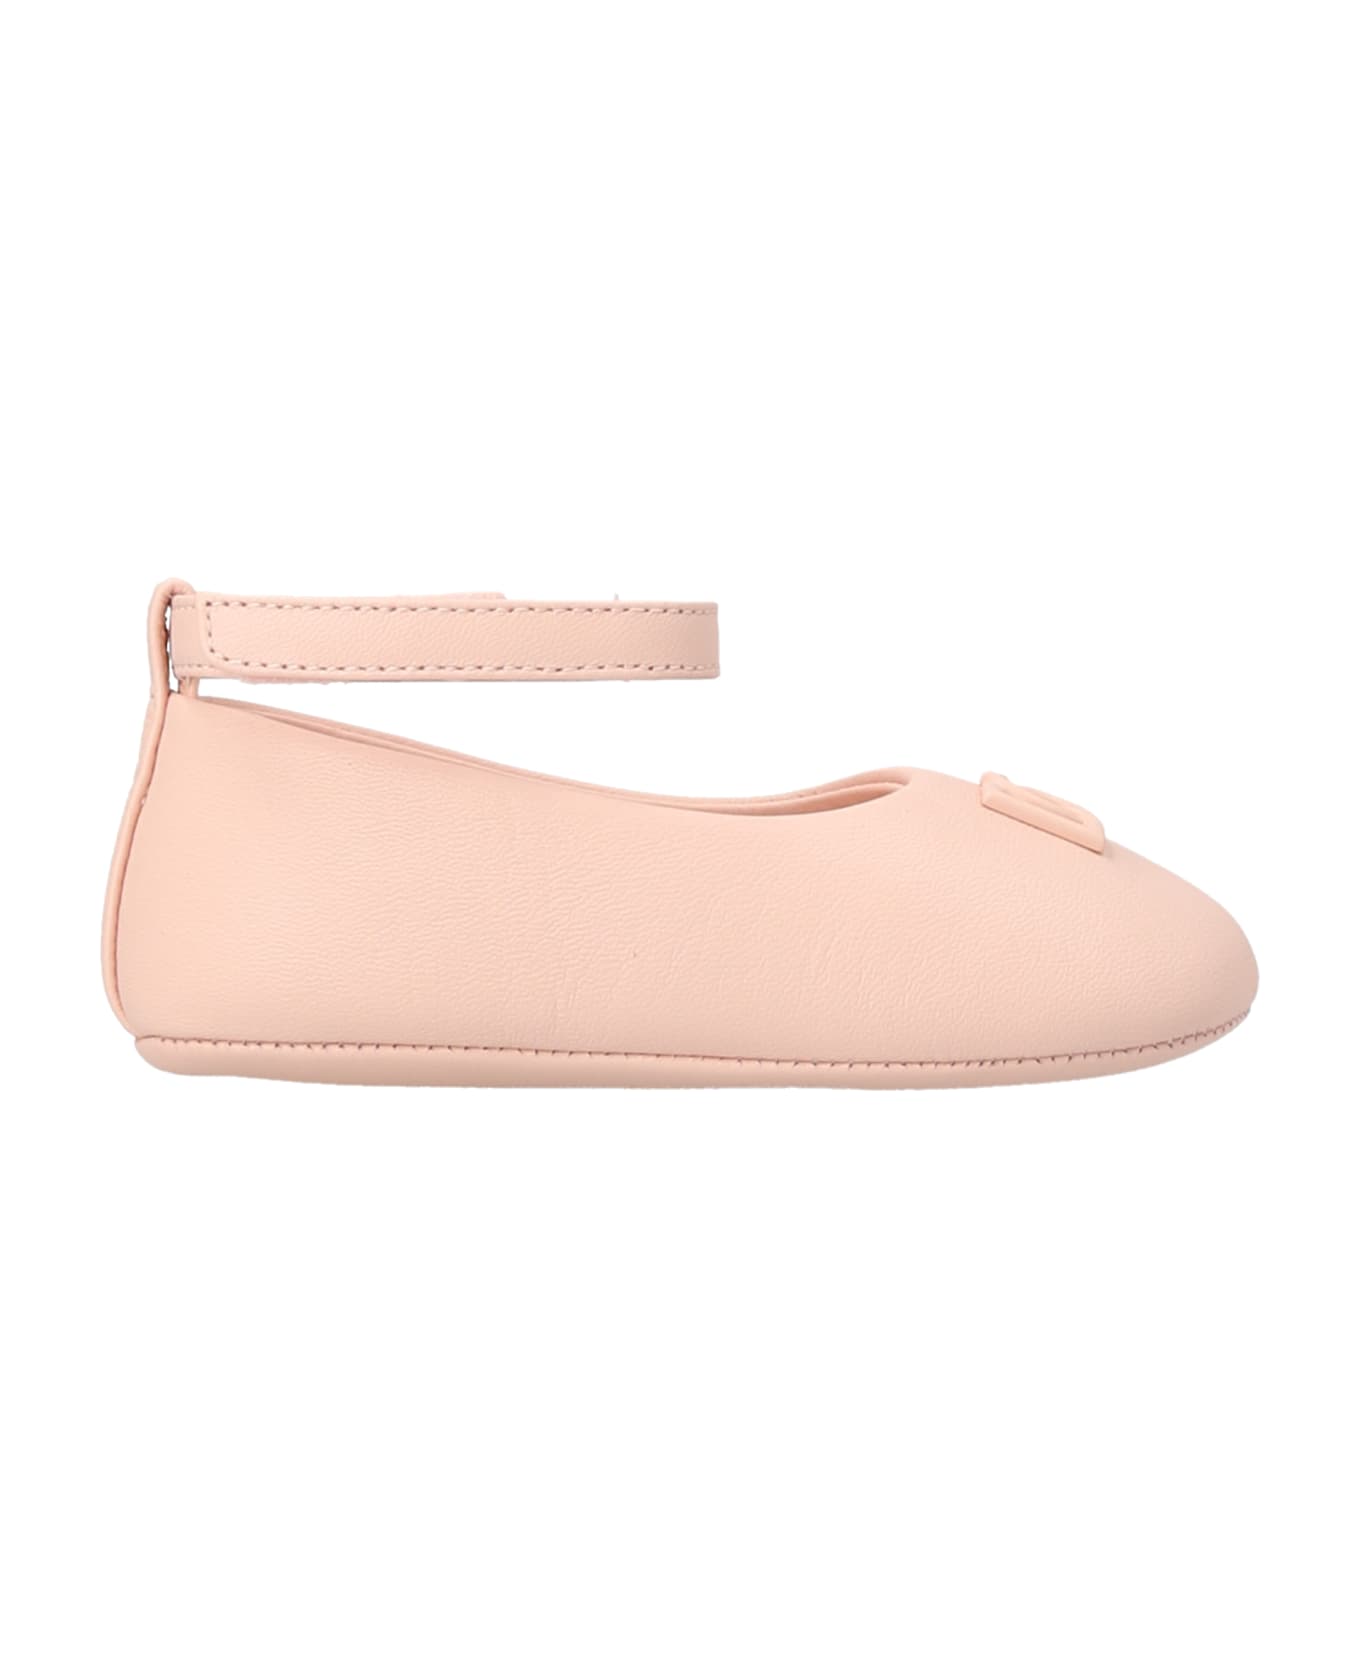 Dolce & Gabbana Strap Ballet Flats - Pink